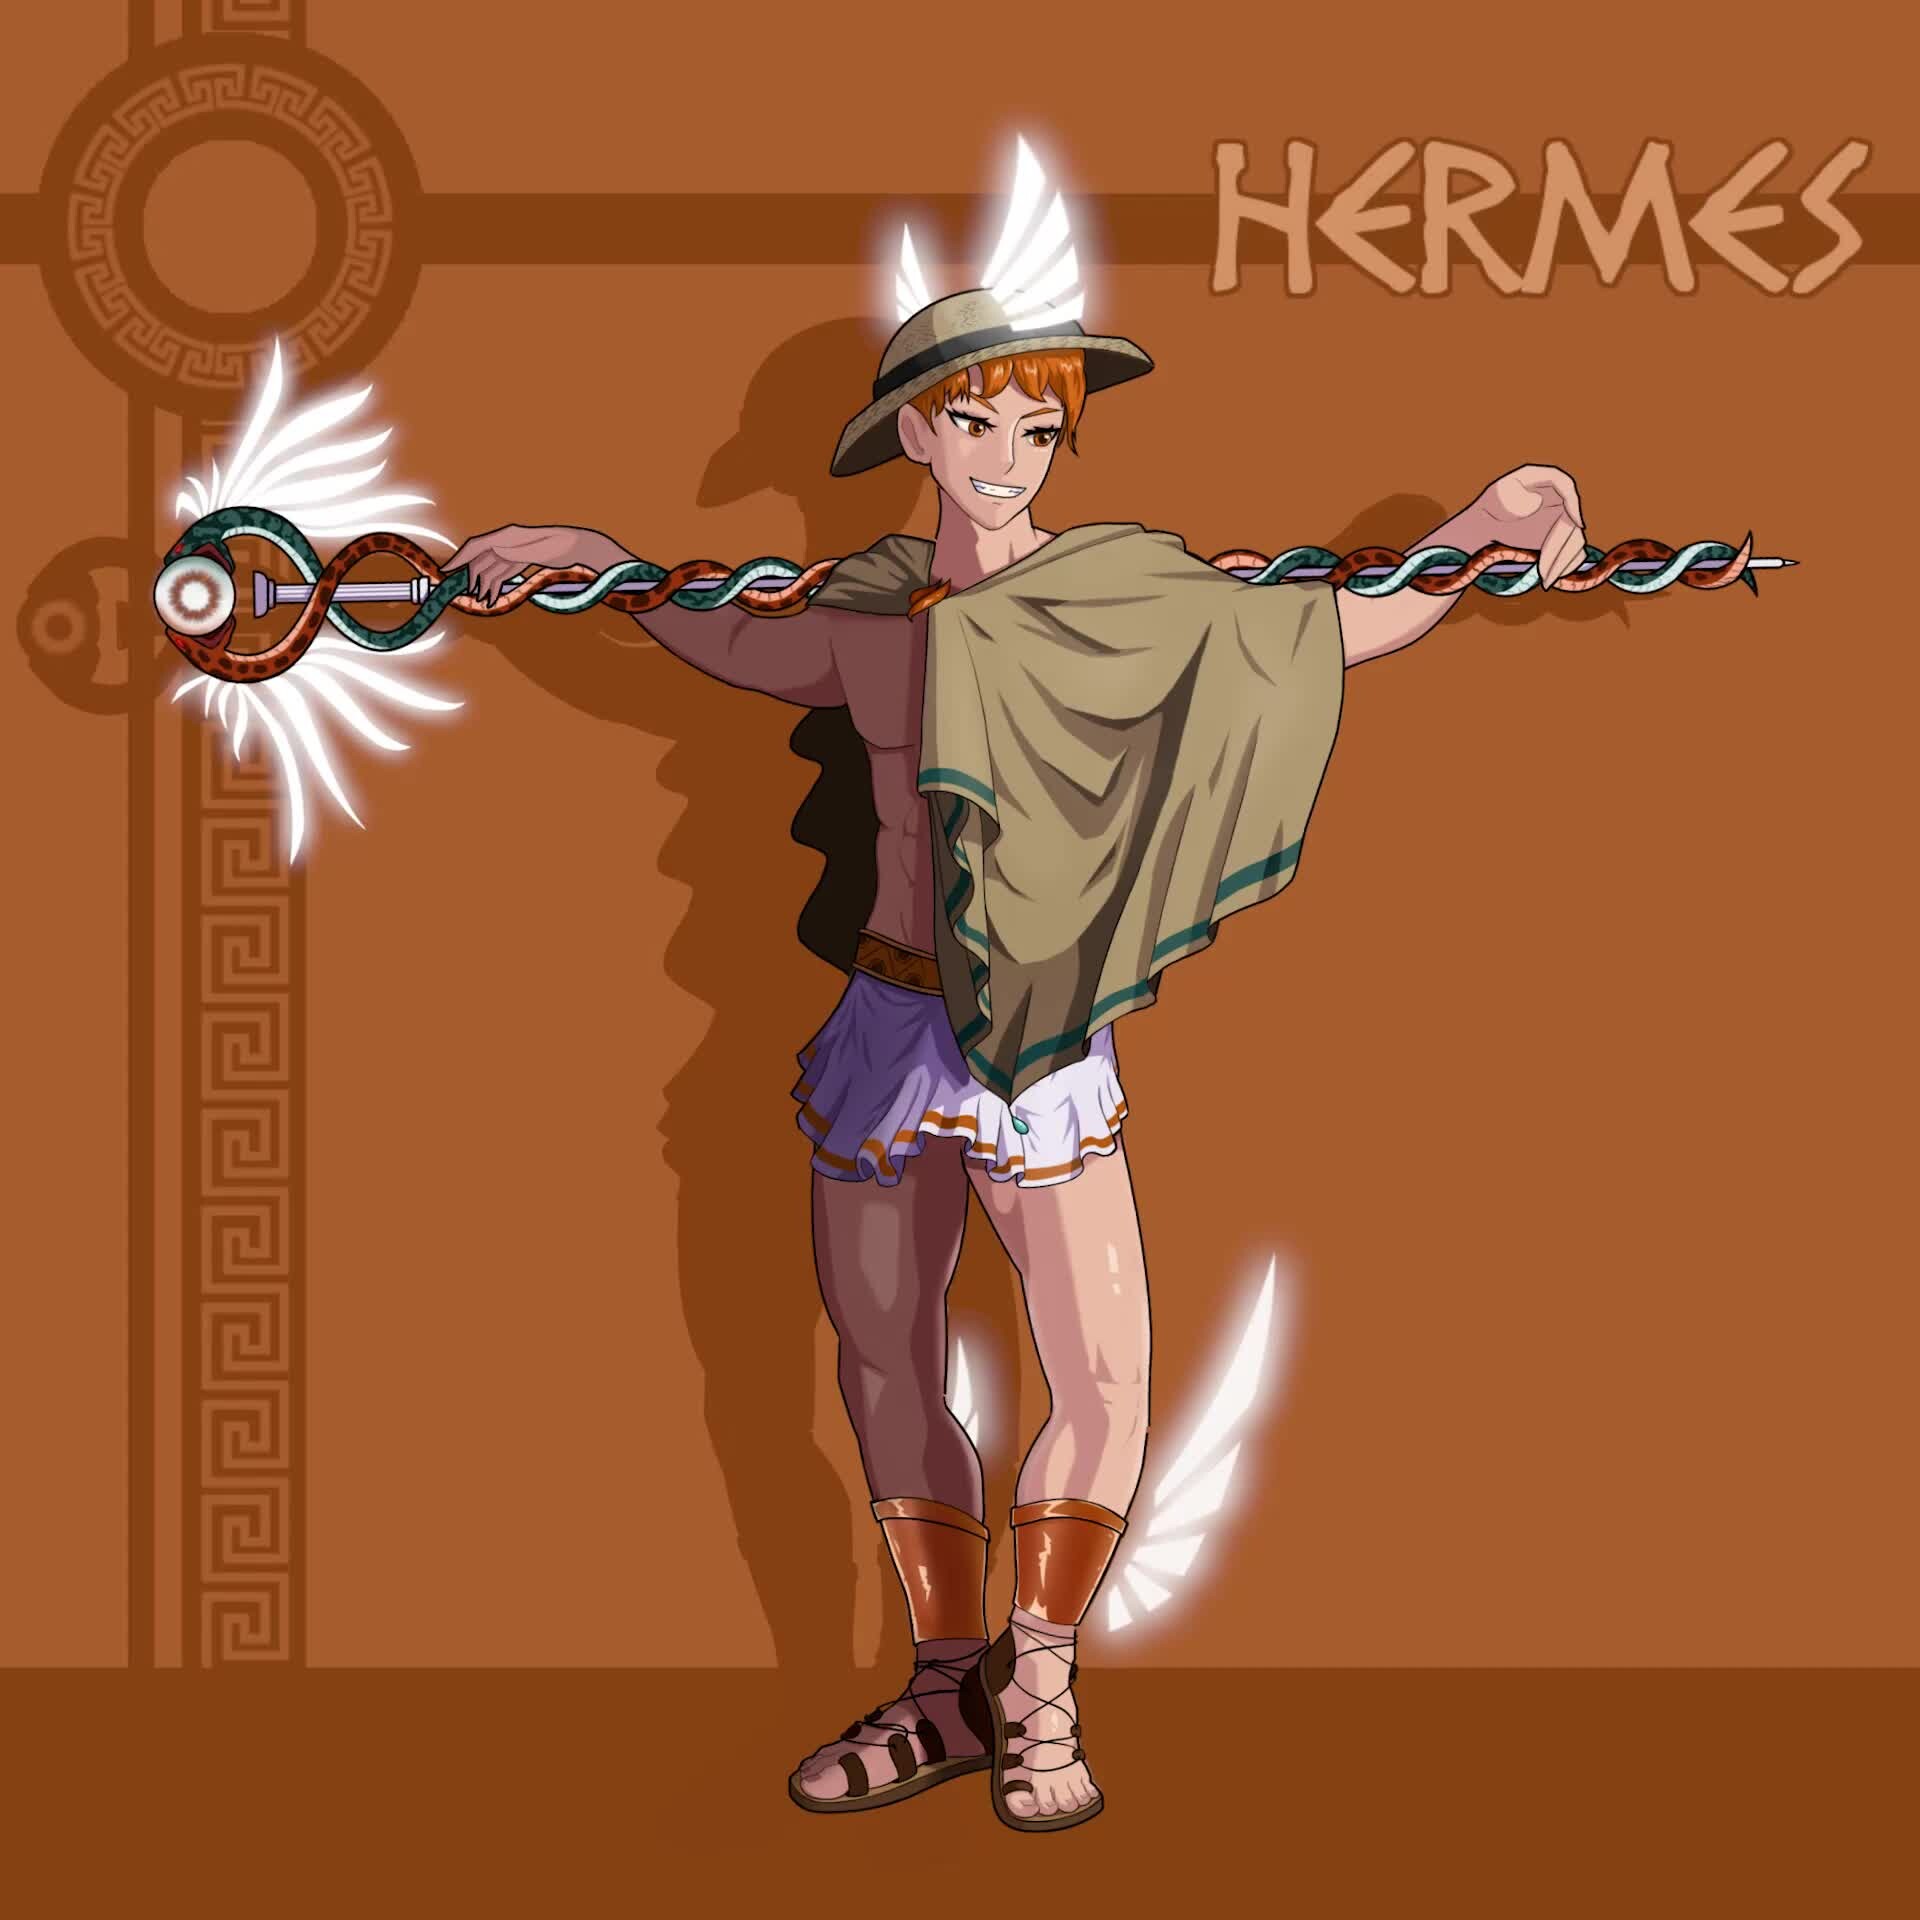 Anime Hermes, Greek Messenger God of travelers, messengers, and all users  of the roads. | Saint seiya, Anime, Saga